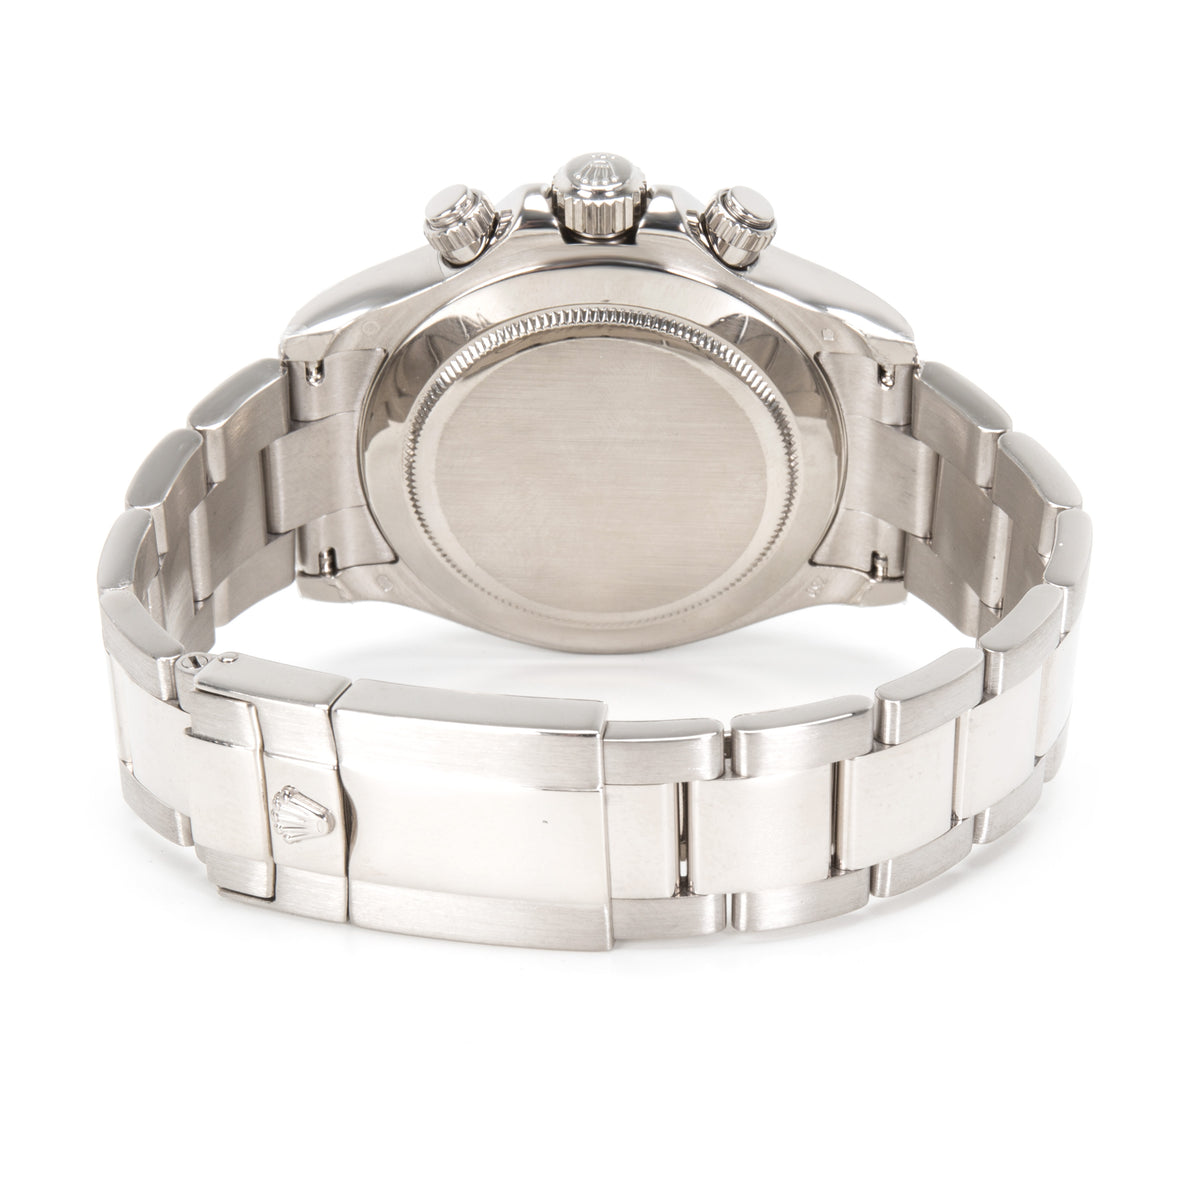 Unworn Rolex Daytona 116509 Men's Watch in 18kt White Gold